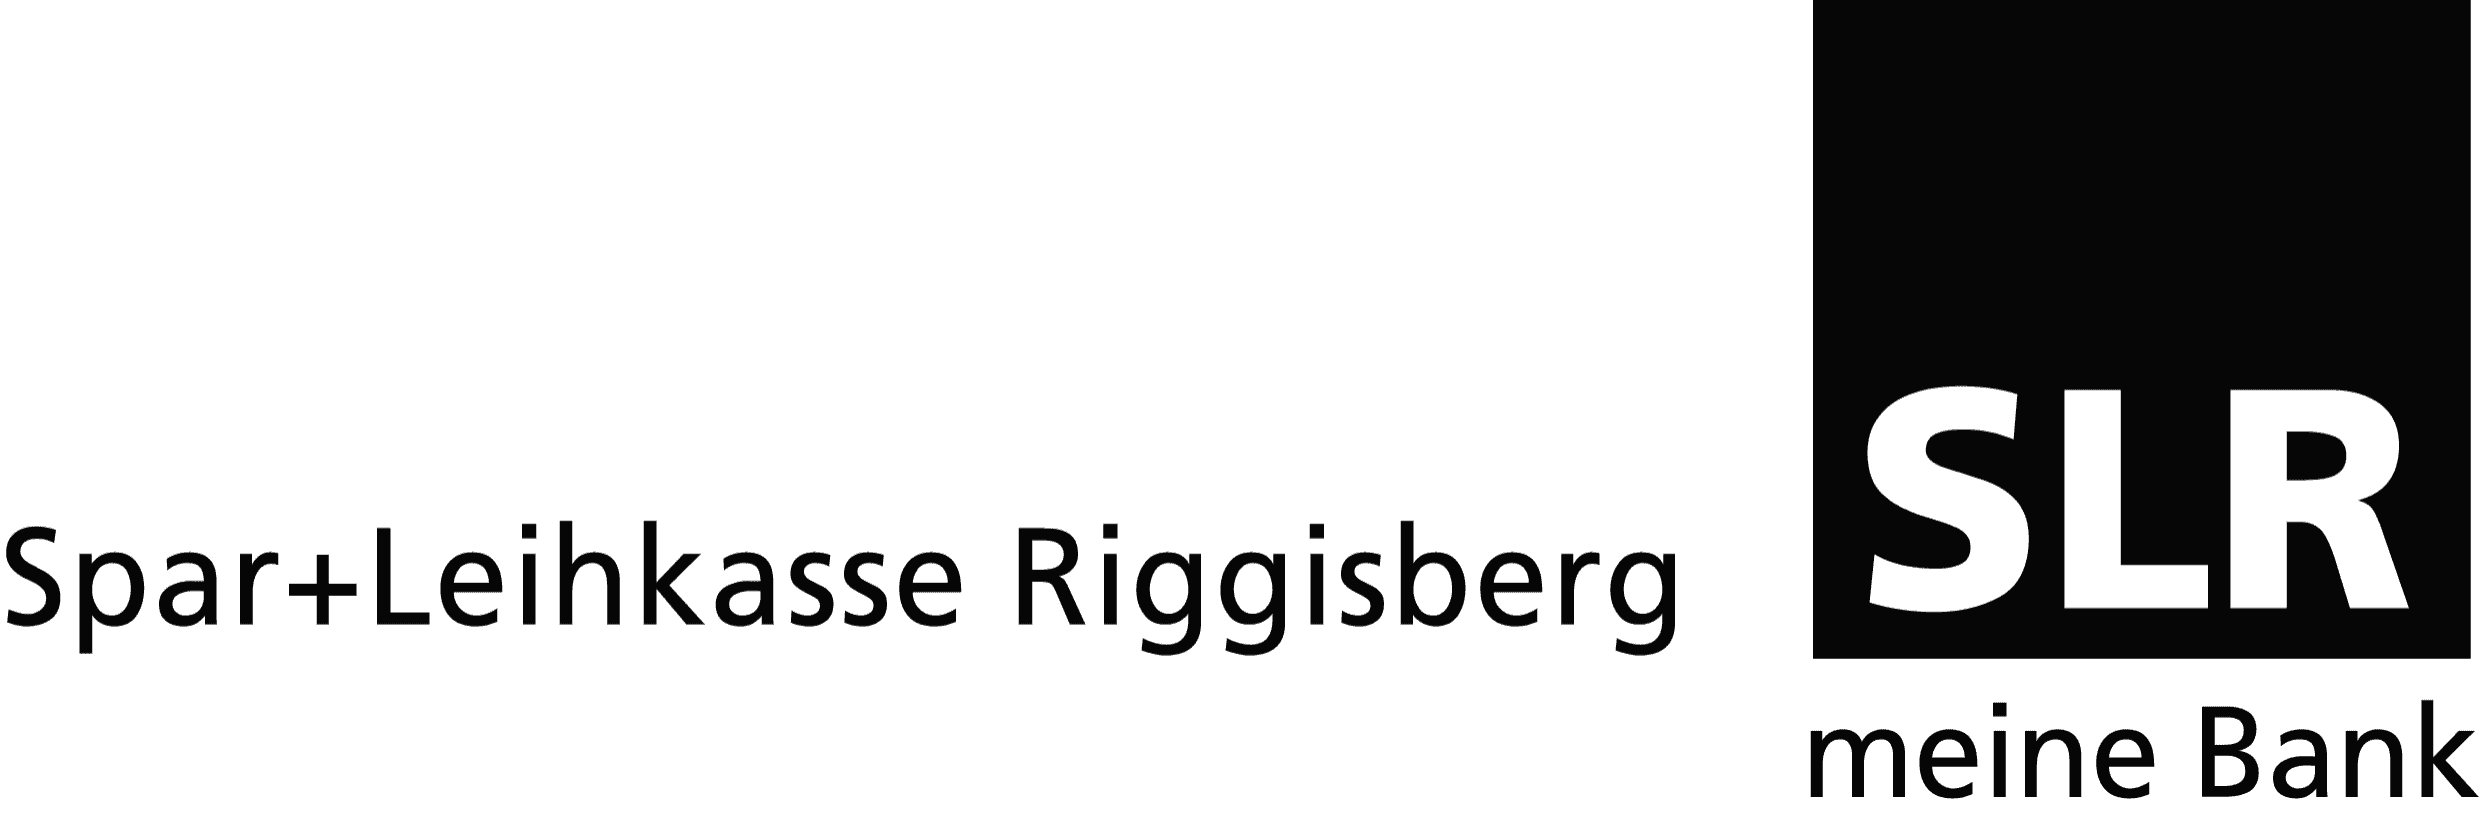 Spar+Leihkasse Riggisberg AG